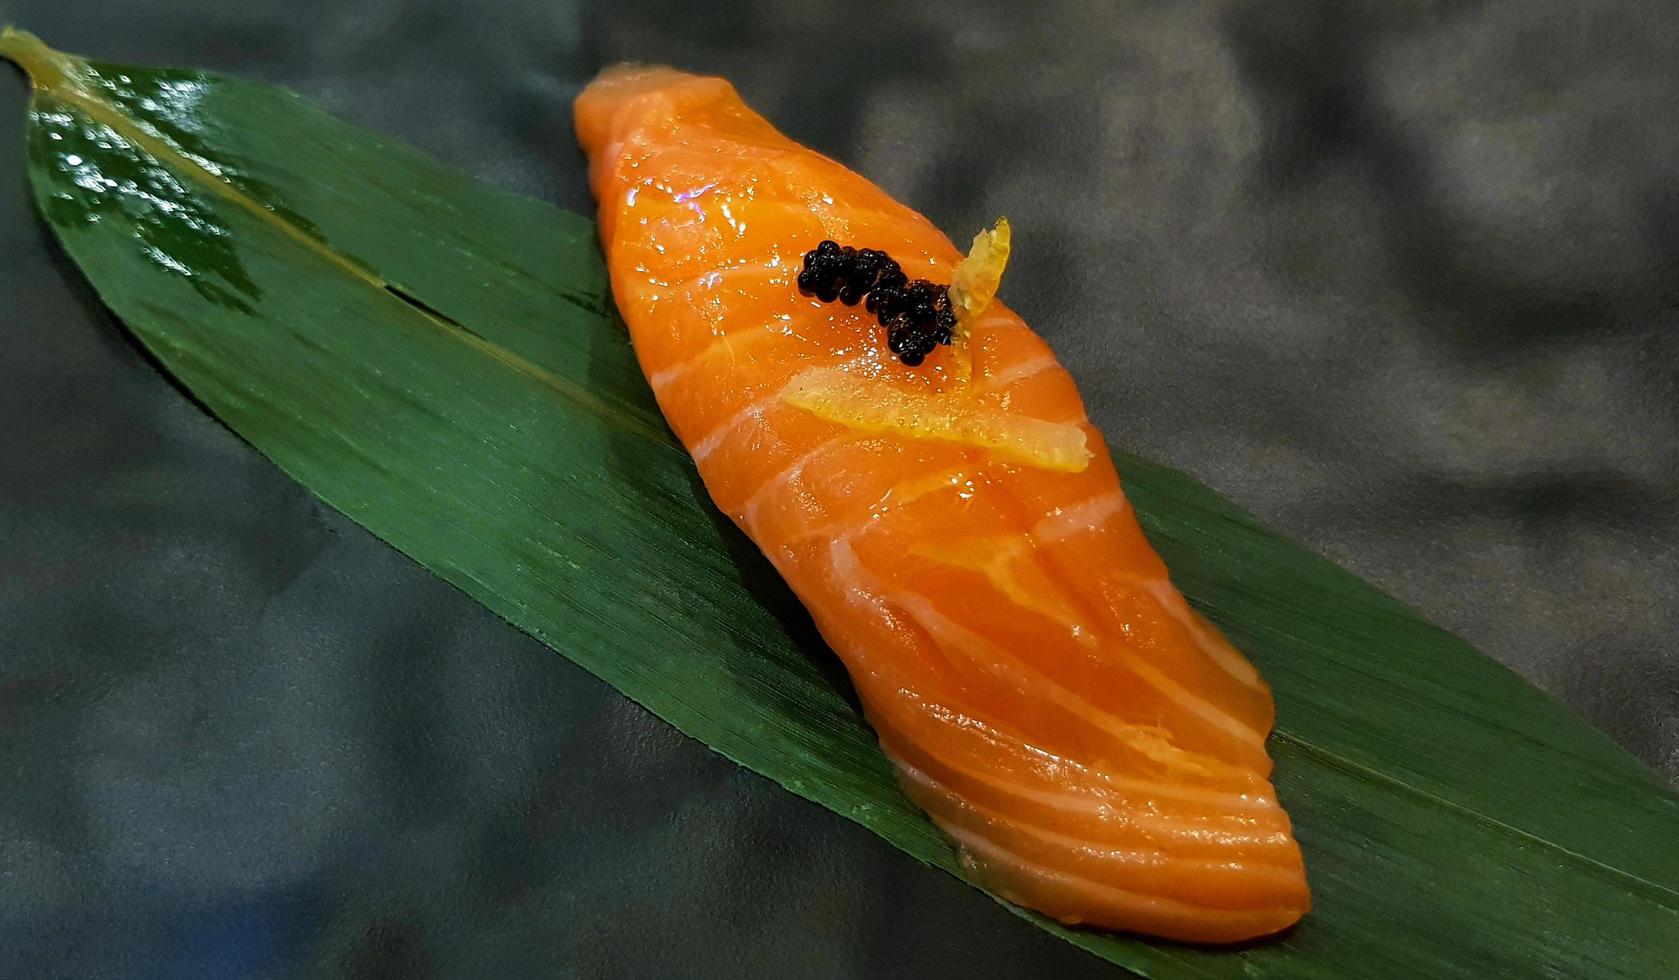 cierra el sushi de salmón fresco en la hoja de bambú verde en el restaurante japonés. comida asiática, delicioso pescado rebanado en arroz japonés con espacio para copiar. concepto de estilo de vida de alimentación saludable. foto